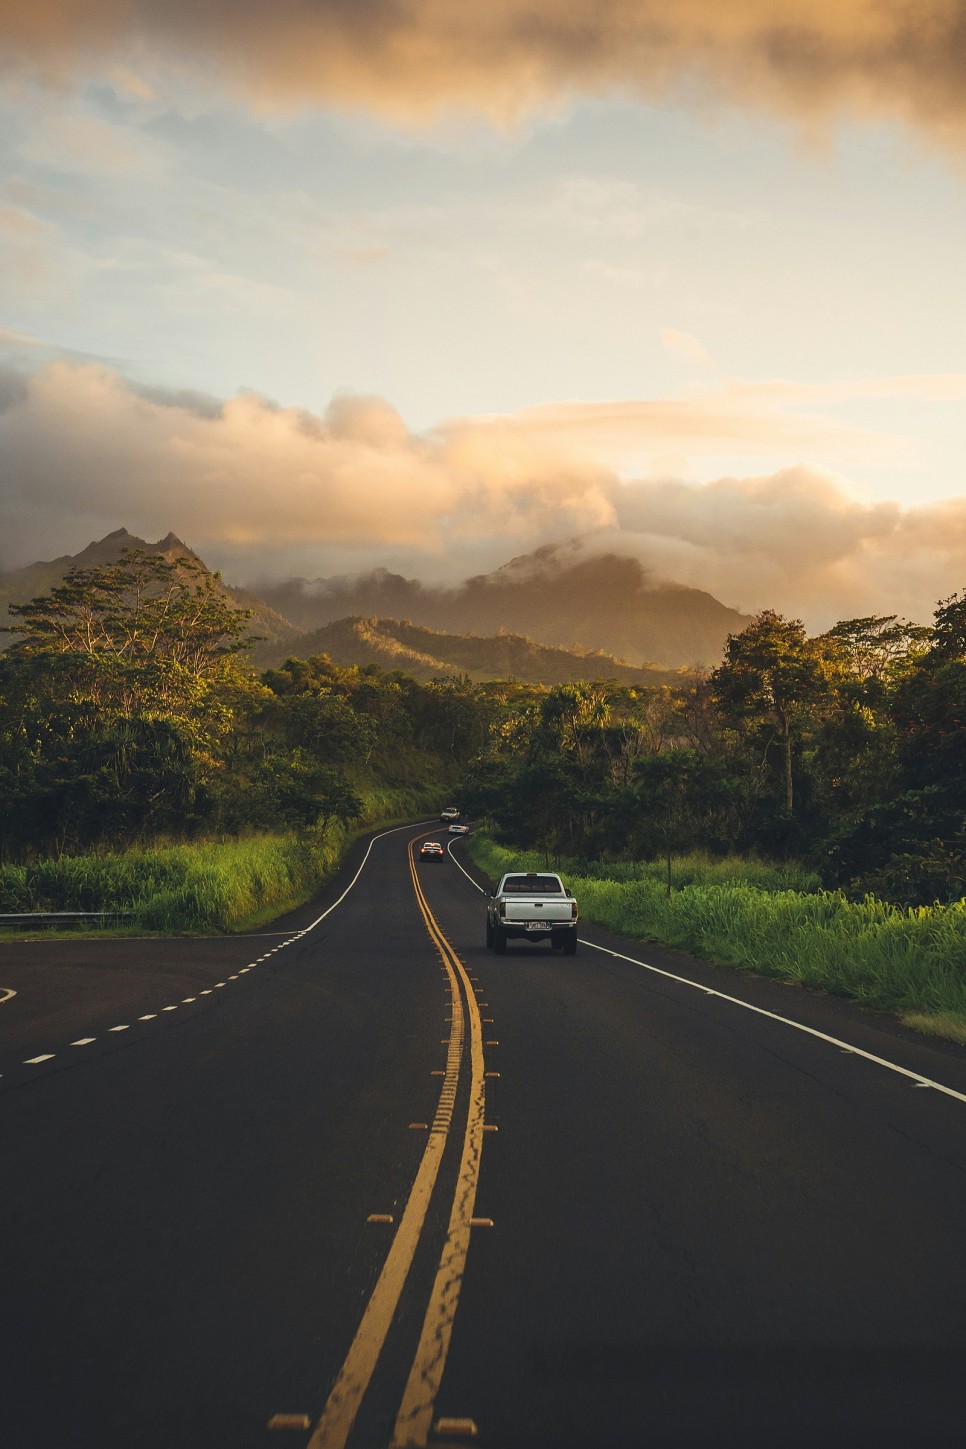 하와이의 높은 산과 포장된 도로 위에 다니는 차들